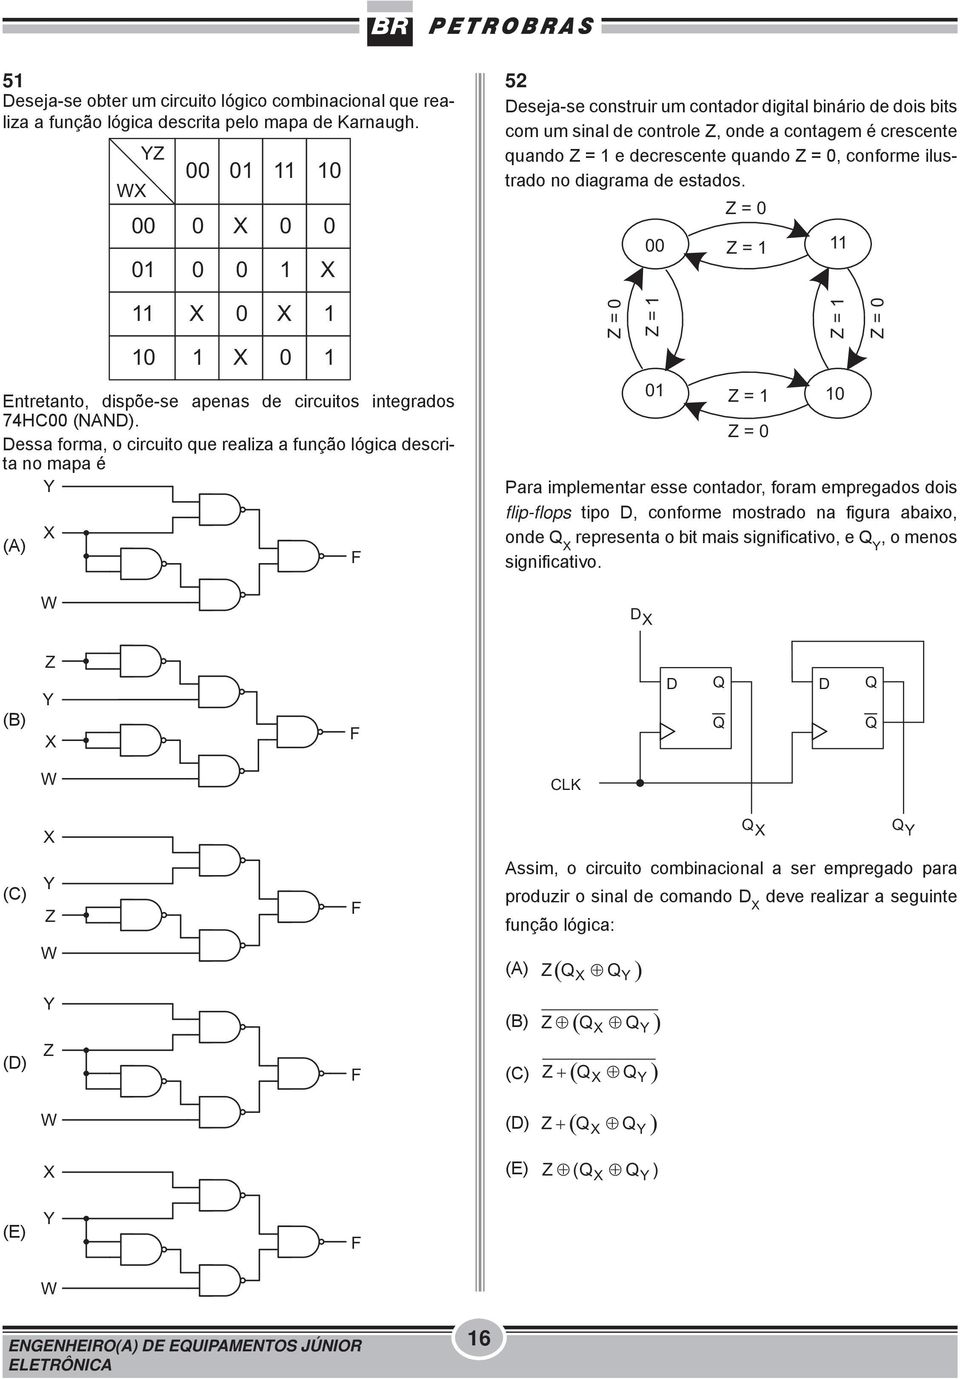 Dessa forma, o circuito que realiza a função lógica descrita no mapa é W 1 1 F 52 Deseja-se construir um contador digital binário de dois bits com um sinal de controle Z, onde a contagem é crescente